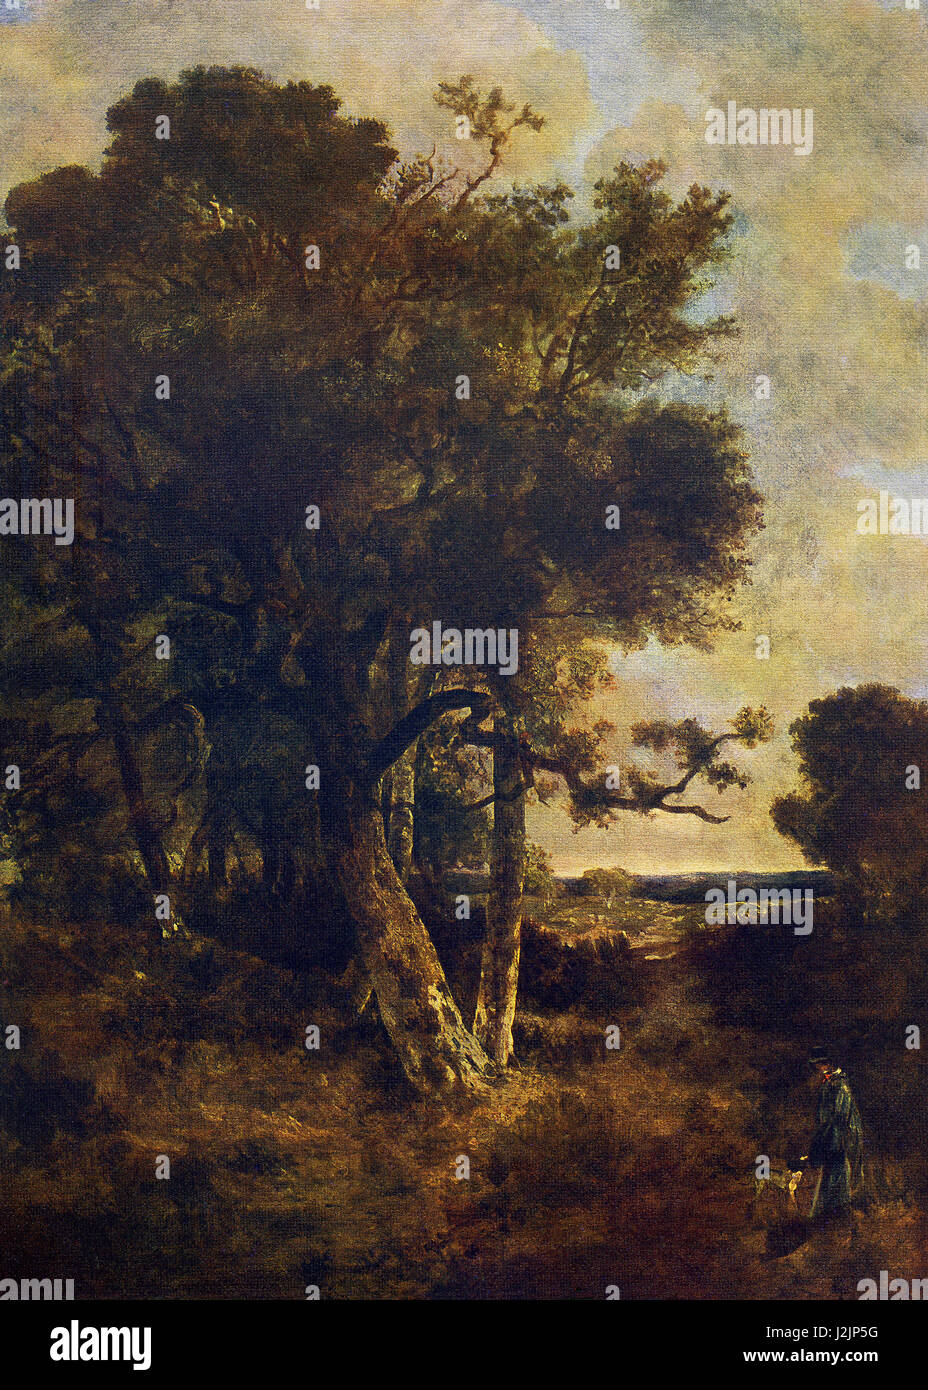 Questo dipinto, intitolato sulle gonne della foresta, è stato fatto dall'artista inglese John Crome, noto anche come "Vecchio Chrome' (1768-1821). Oggi è riconosciuto come unadelle migliori paesaggio inglese pittori. Olandese e pittori fiamminghi e Gainsborough's 'Porte dipinte" ha contribuito a formare il suo stile. Nel 1803 ha fondato la società di Norwich, che ha portato alla formazione della famosa scuola di Norwich. Egli è al suo meglio con le foto di albero e puntò alla dignità e ampiezza. Foto Stock